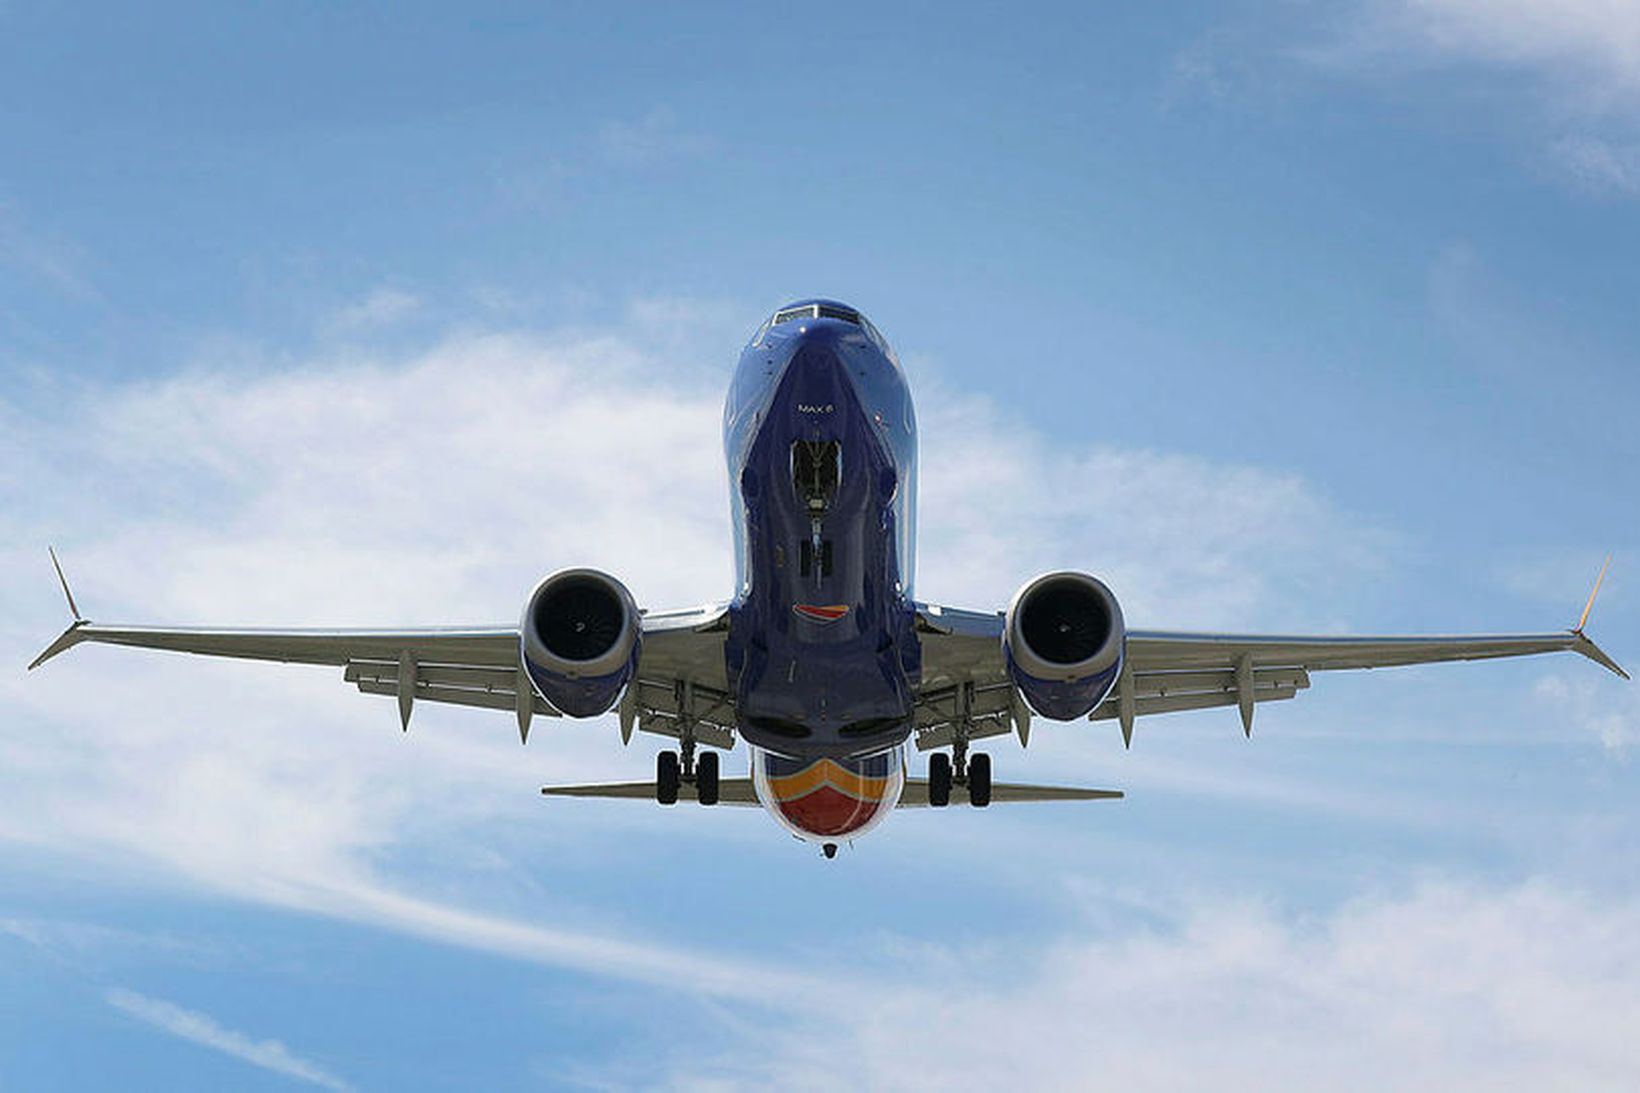 Farþegaþota Southwest Airlines af gerðinni Boeing 737 MAX.